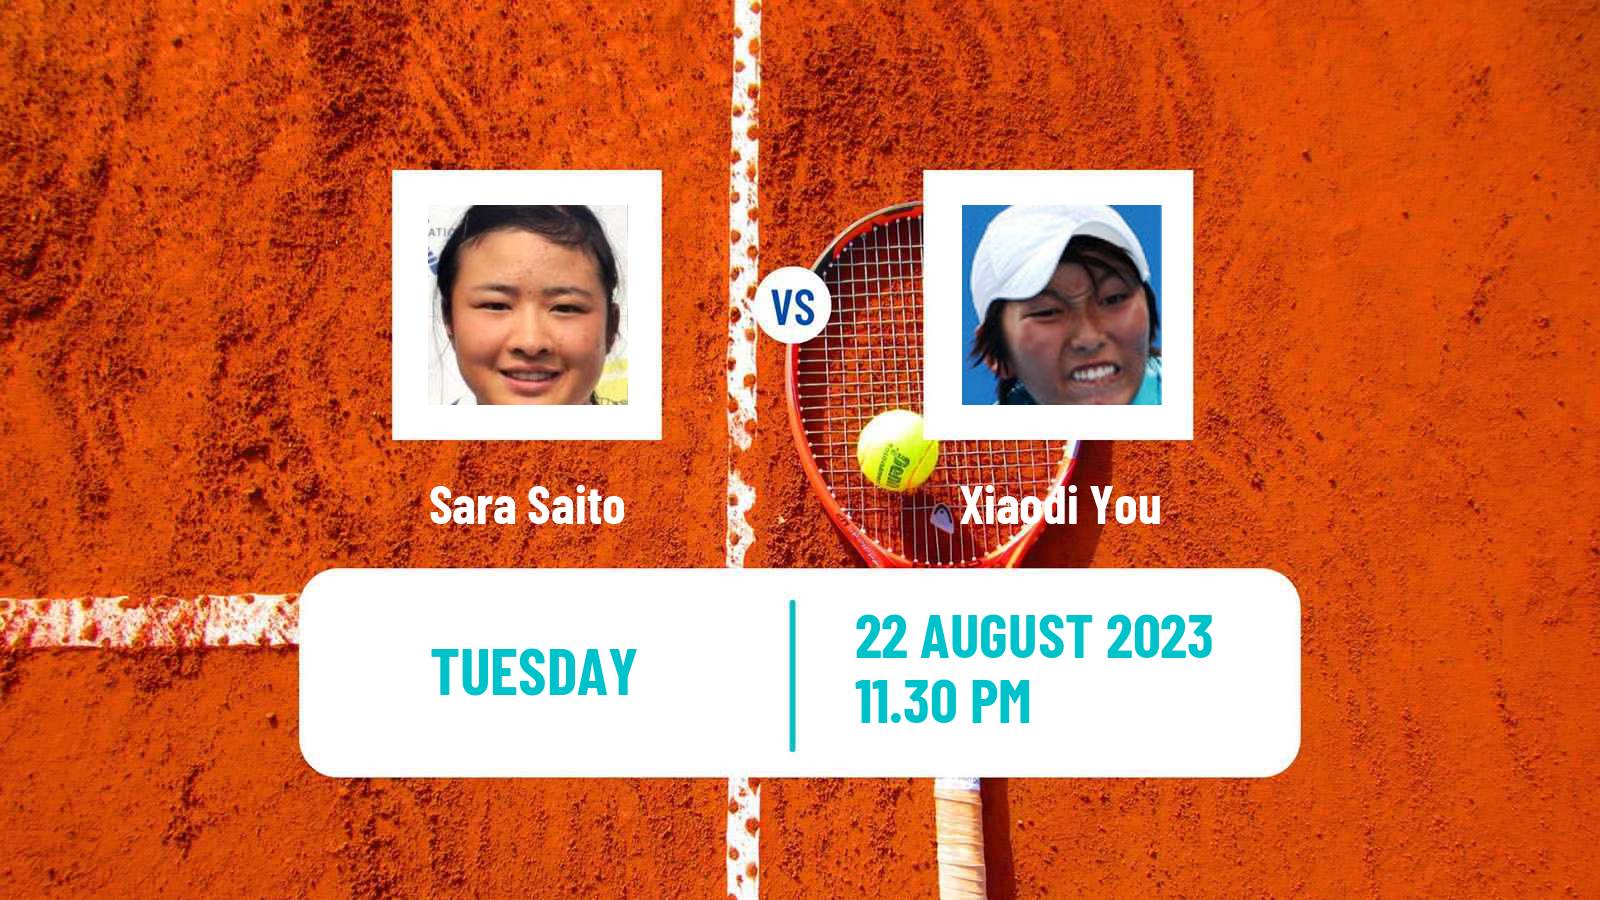 Tennis ITF W40 Hong Kong 2 Women Sara Saito - Xiaodi You